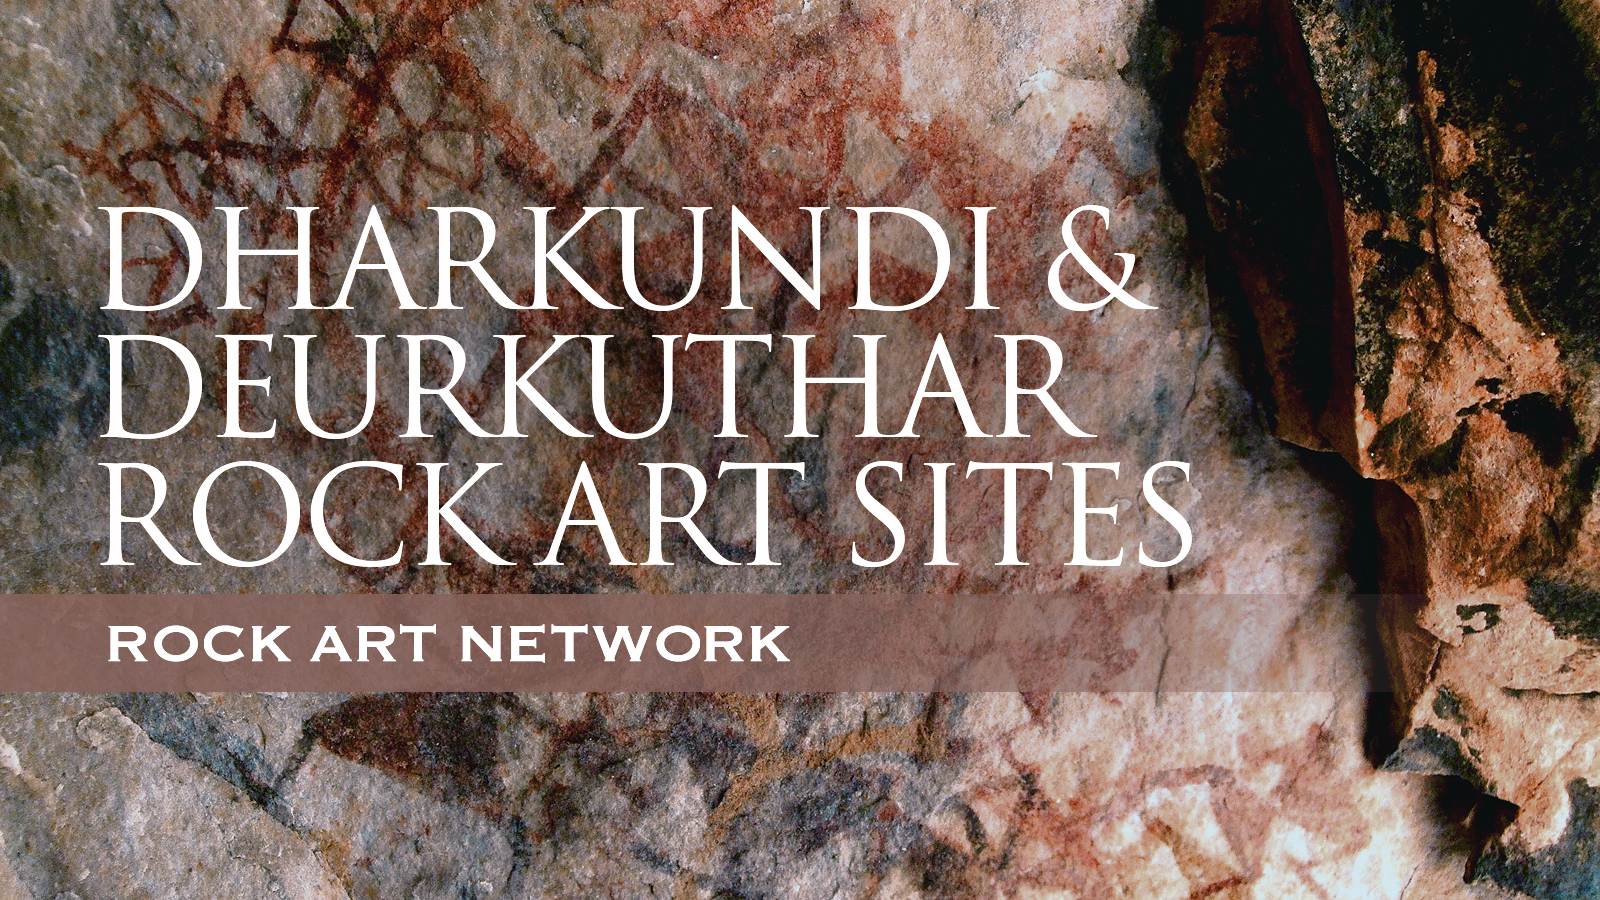 Rock Art Network Meenakshi Dubey-Pathak